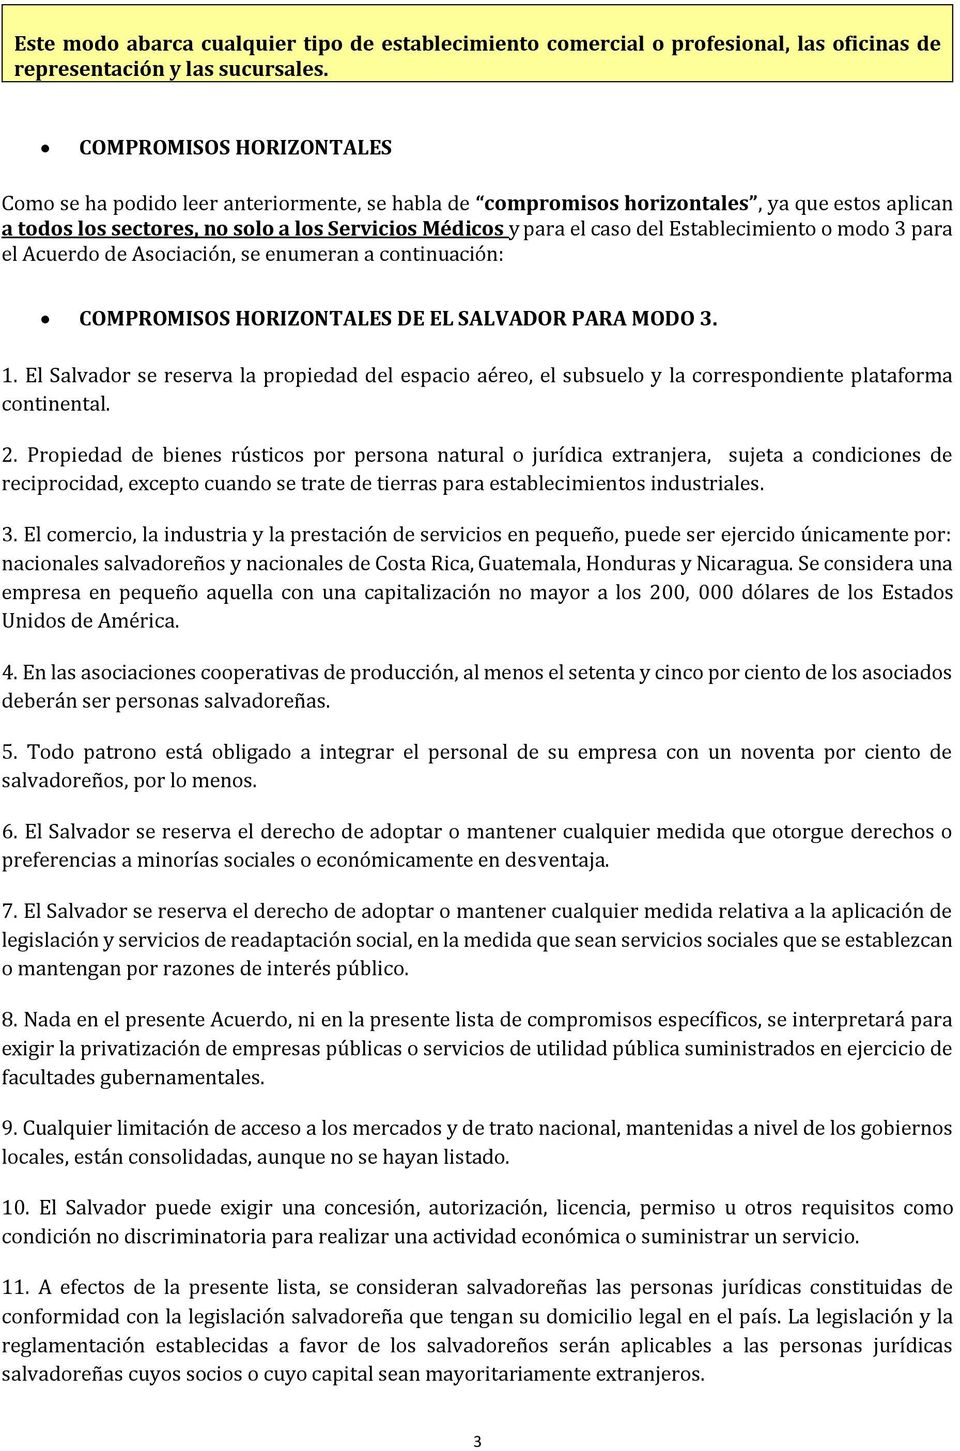 Establecimiento o modo 3 para el Acuerdo de Asociación, se enumeran a continuación: COMPROMISOS HORIZONTALES DE EL SALVADOR PARA MODO 3. 1.